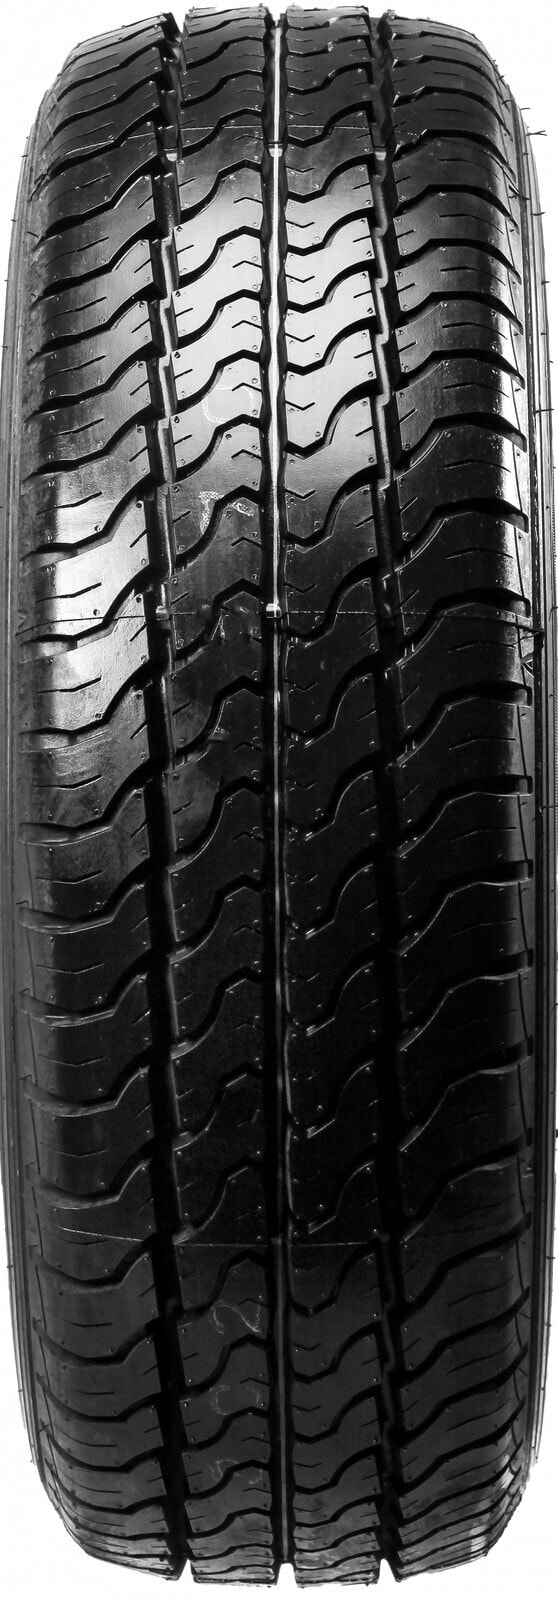 Шины для легких грузовых автомобилей летние Dunlop Econodrive DOT18 235/65 R16 115/113R